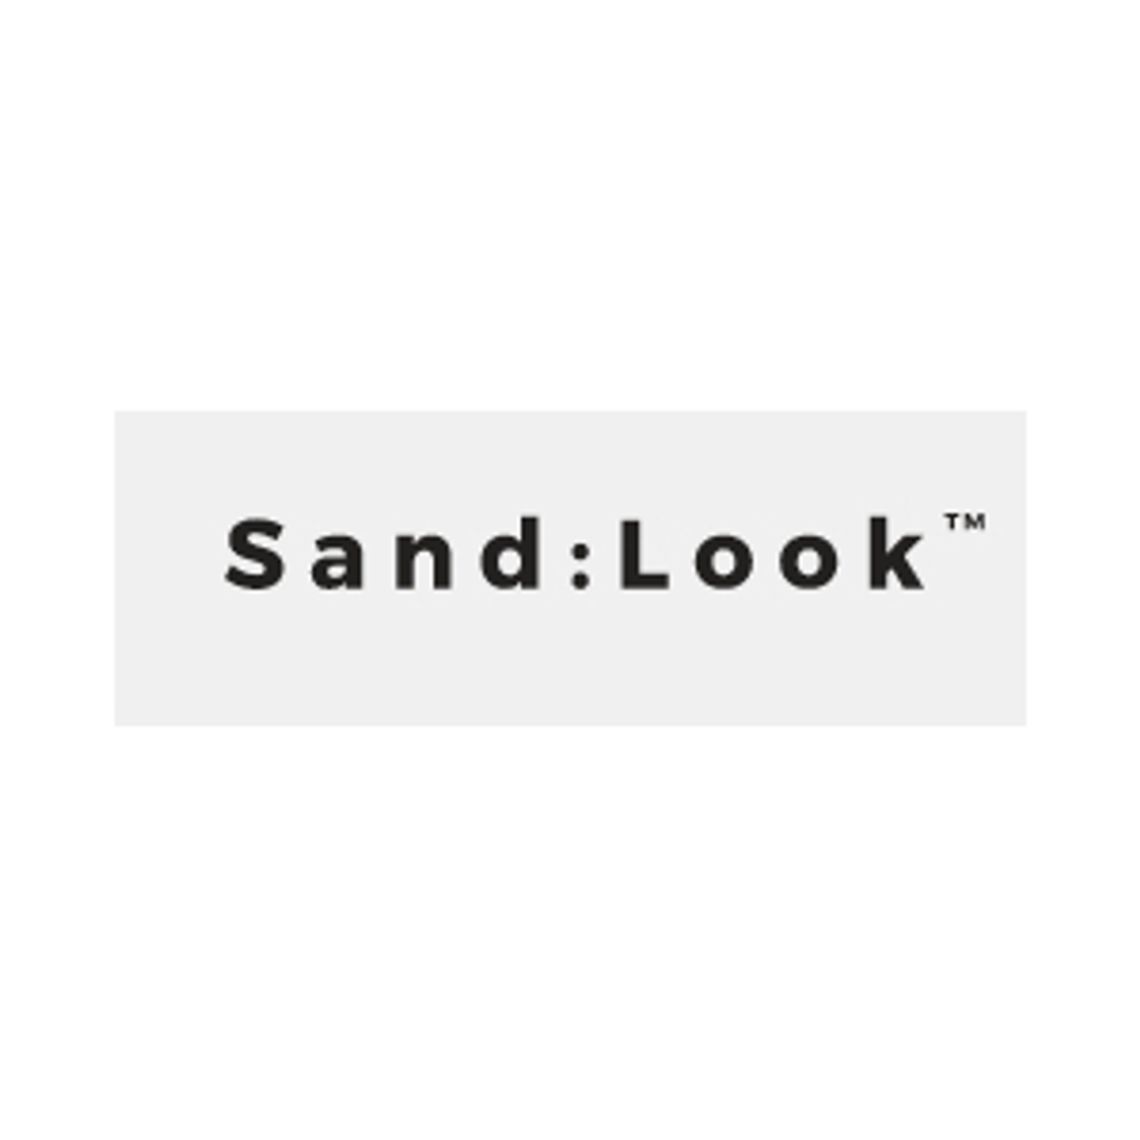 Kamery IP - Sand:Look